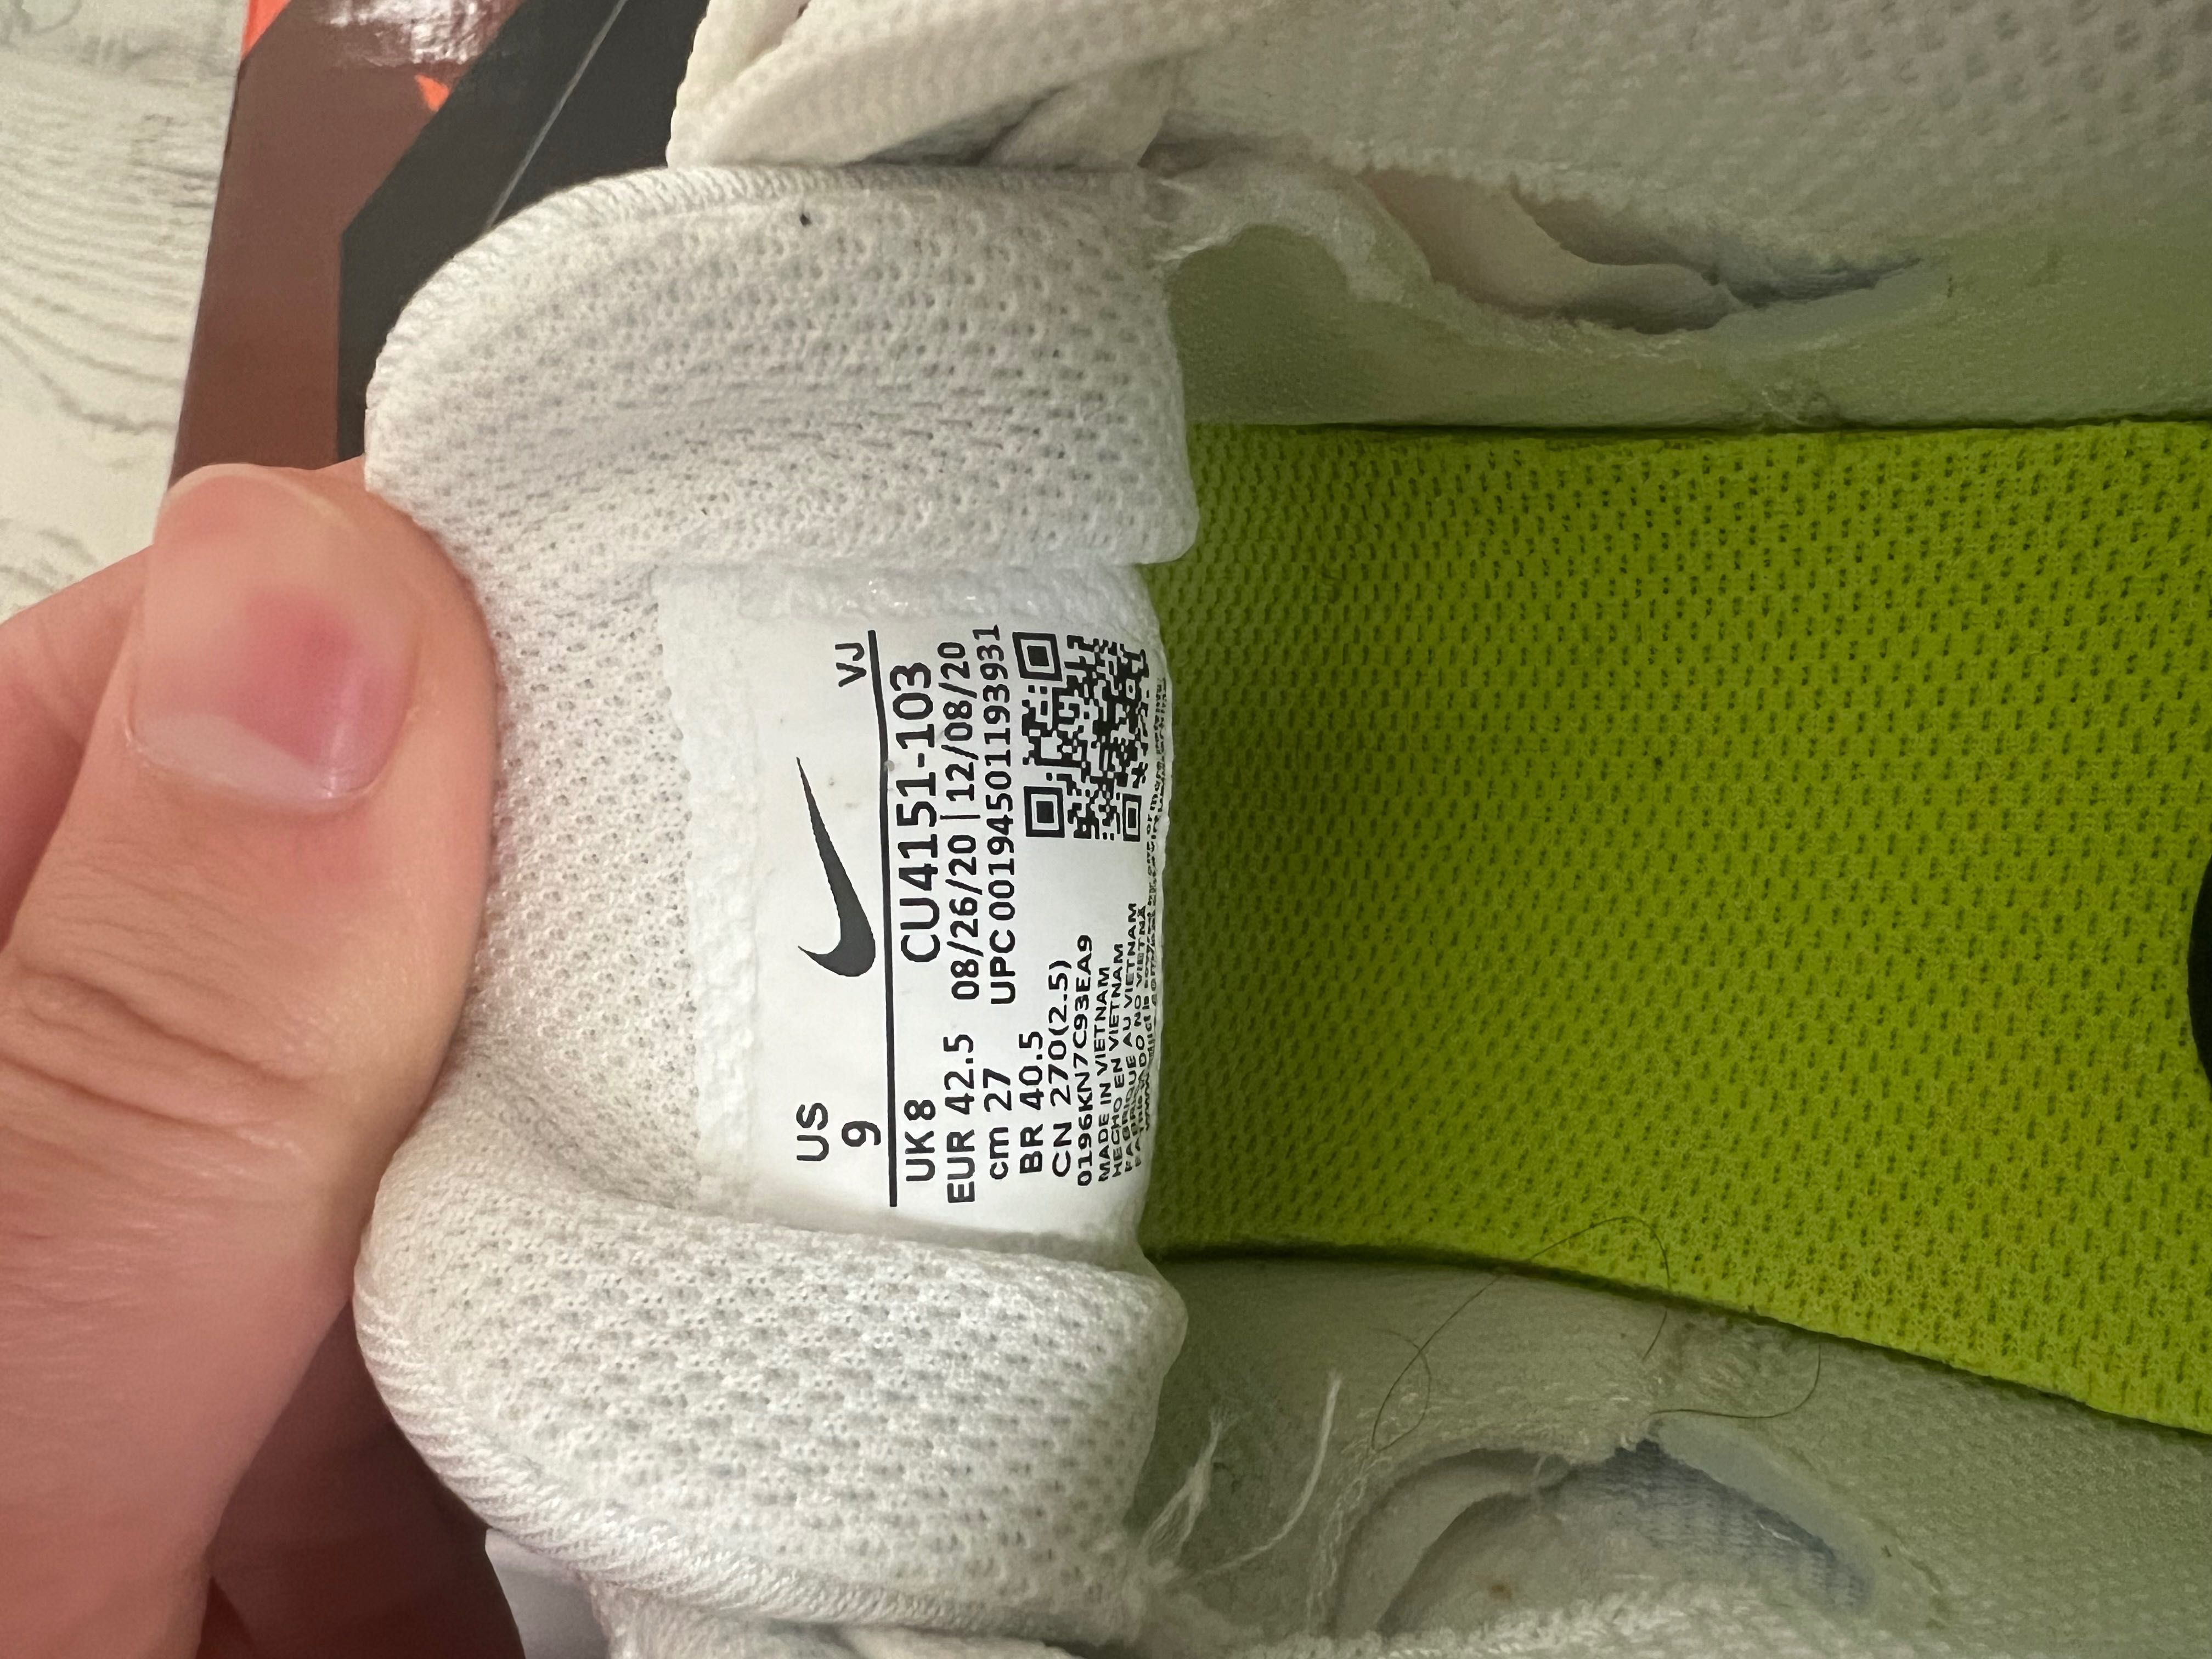 Обувки Nike Air Max Bolt 42.5